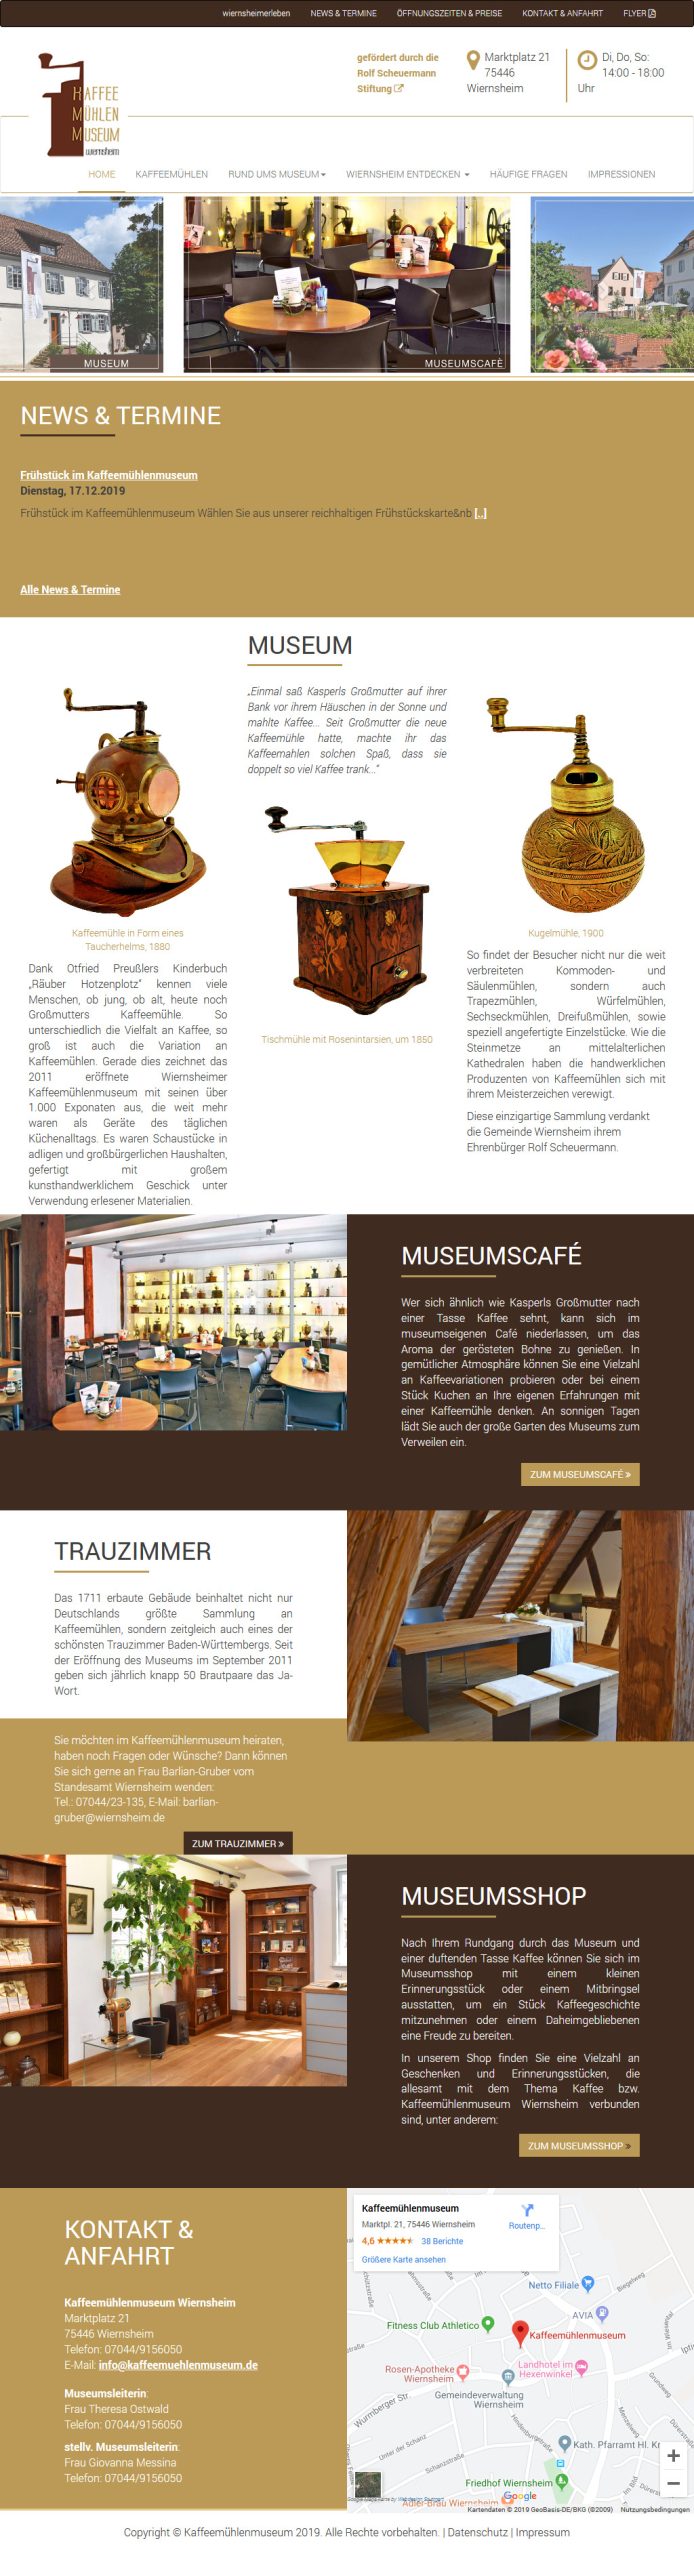 Webdesign Relaunch Museum Ansicht Tablet